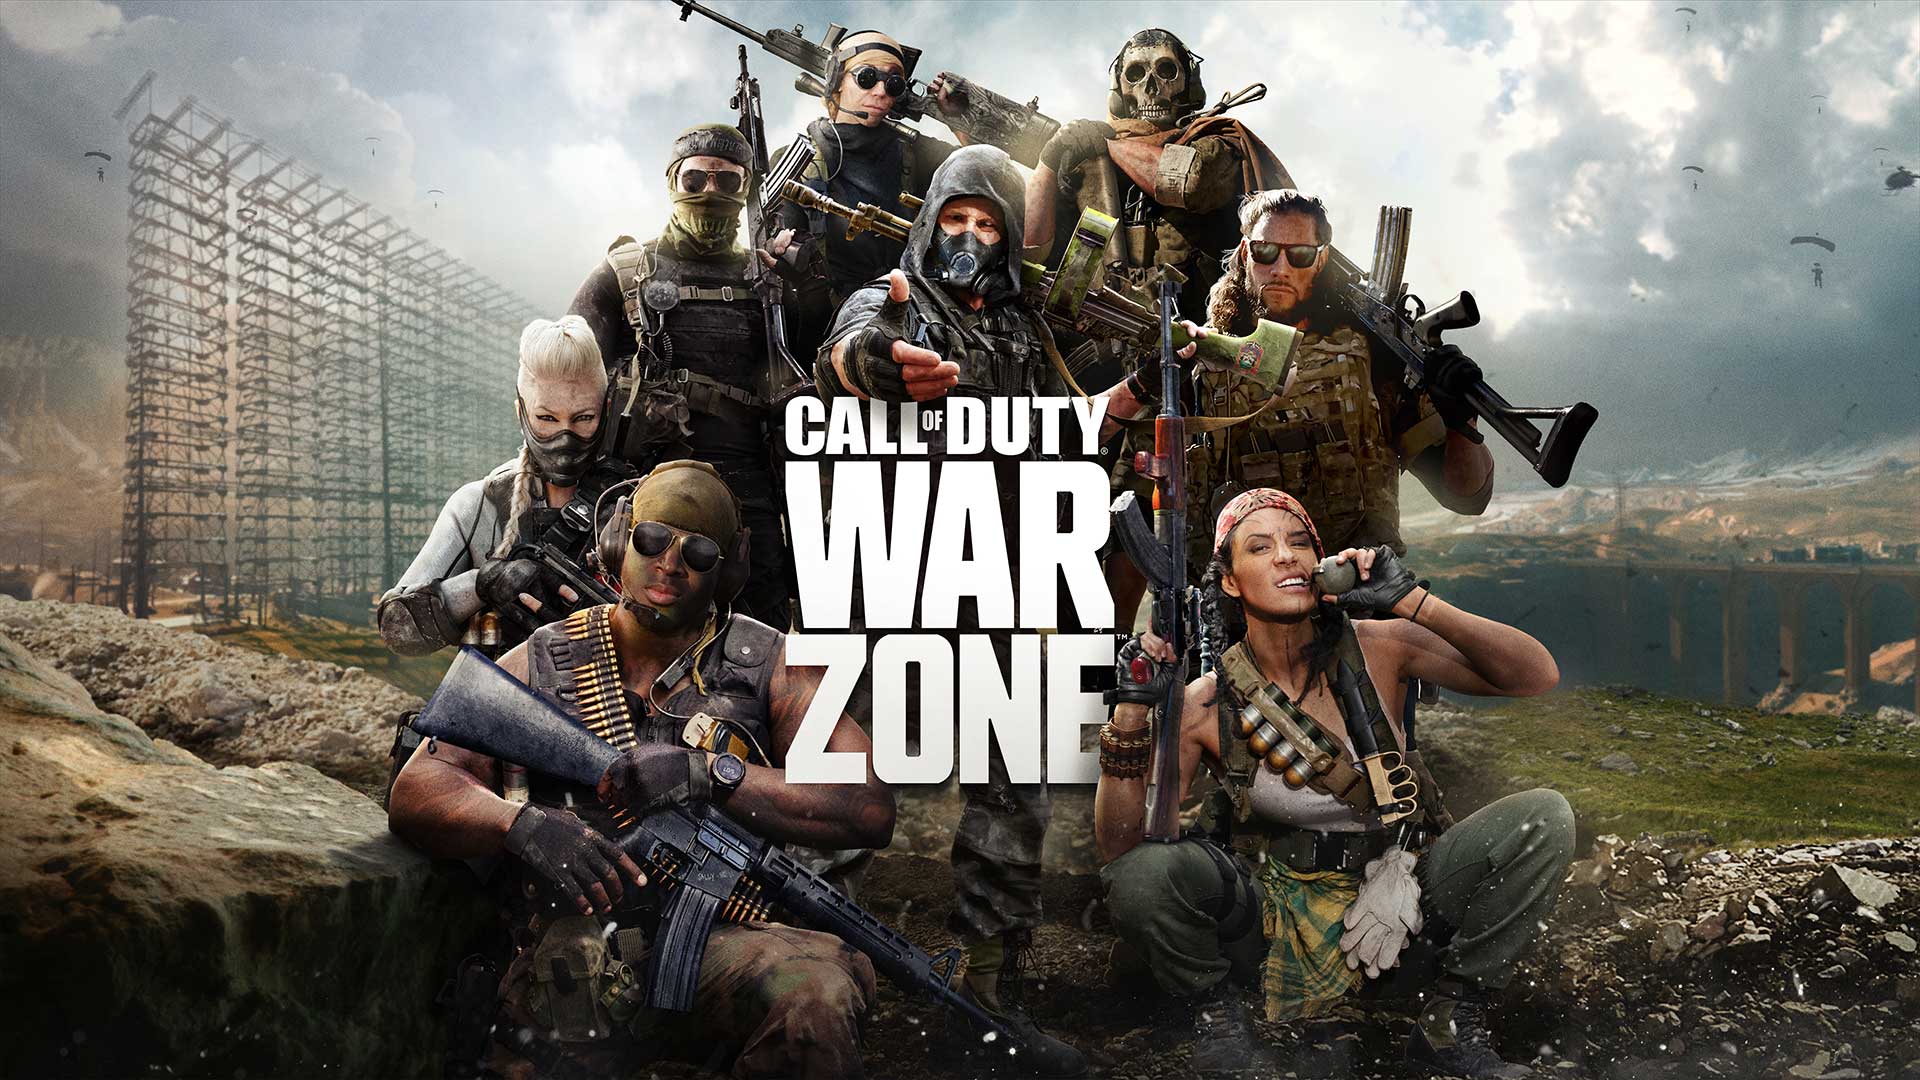 A data de lançamento do Call of Duty Warzone Mobile acabou de mudar (e são  más notícias) – Mundo Apple SJC –Assistência Premium Apple–